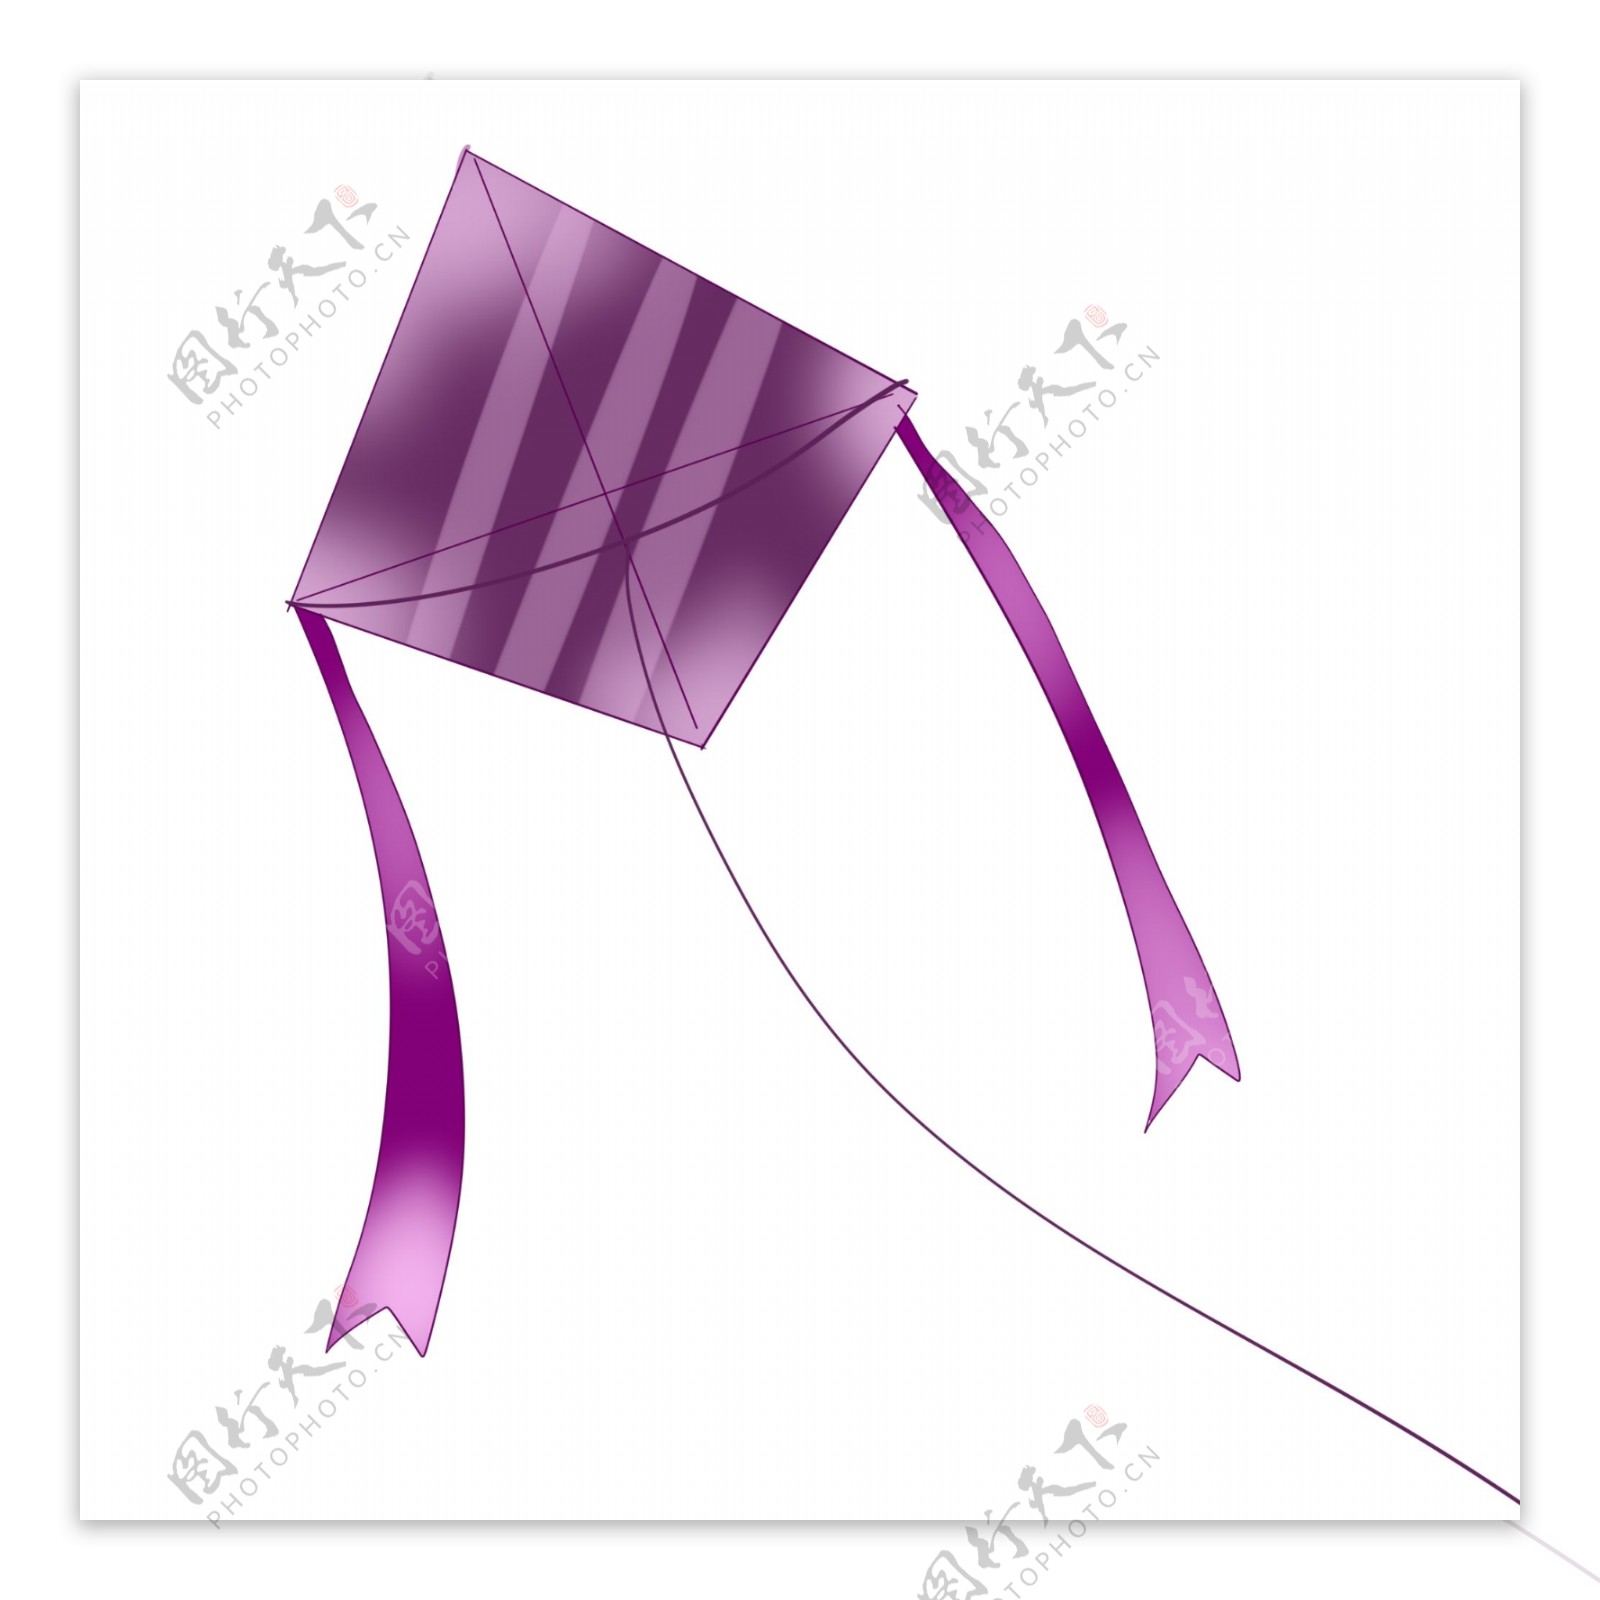 长丝带紫色风筝插画